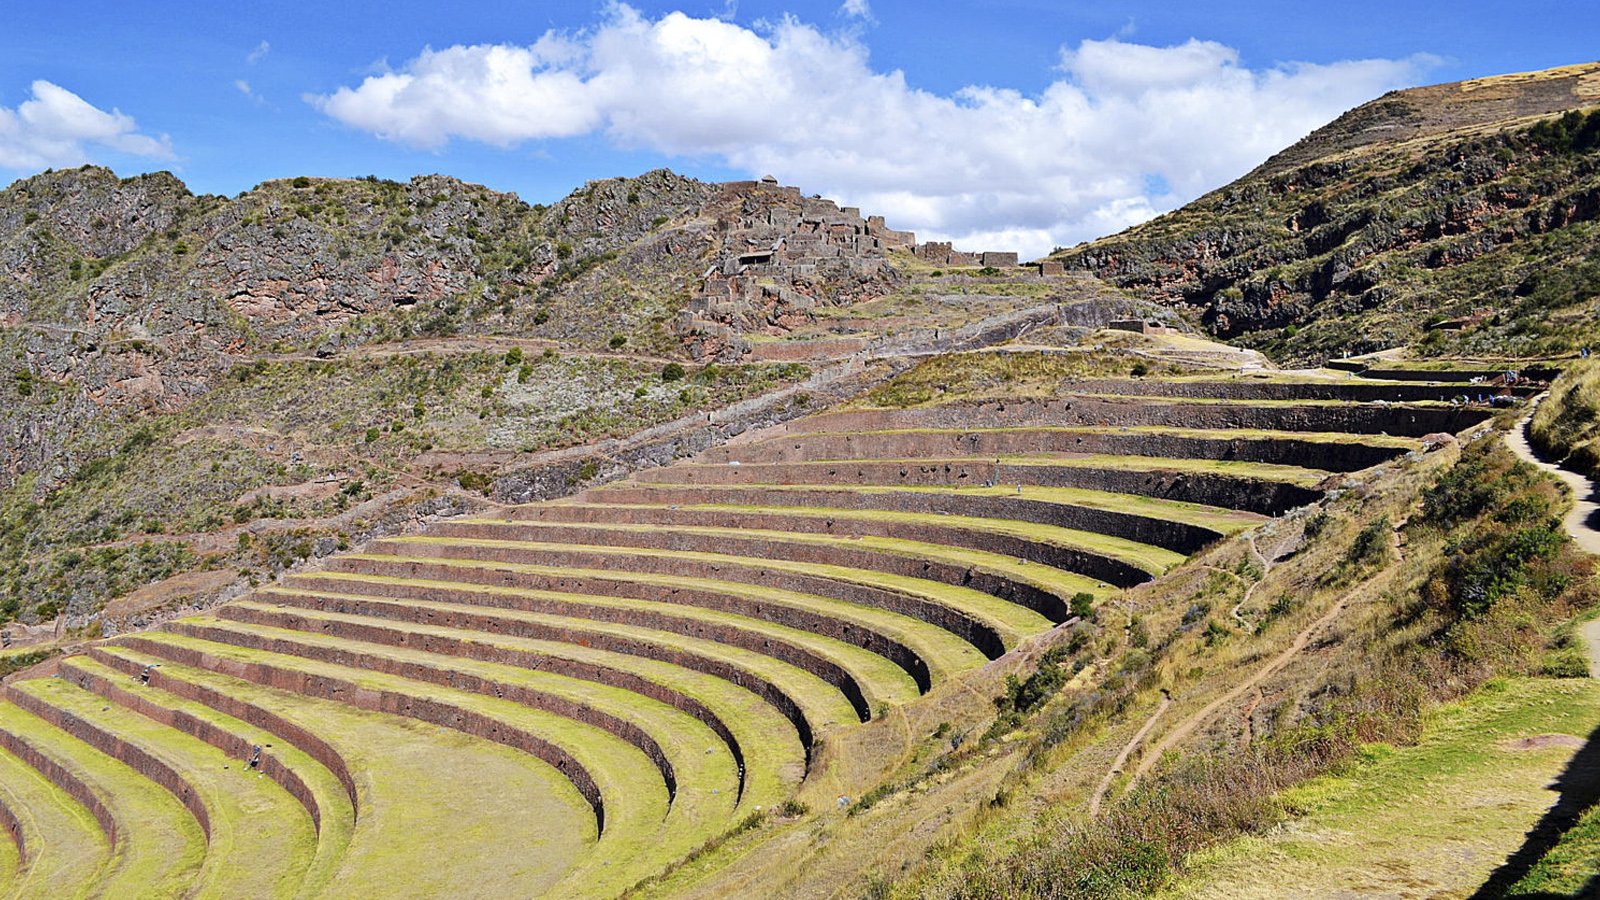 Foto 1 de Tour to the Sacred Valley of the Incas